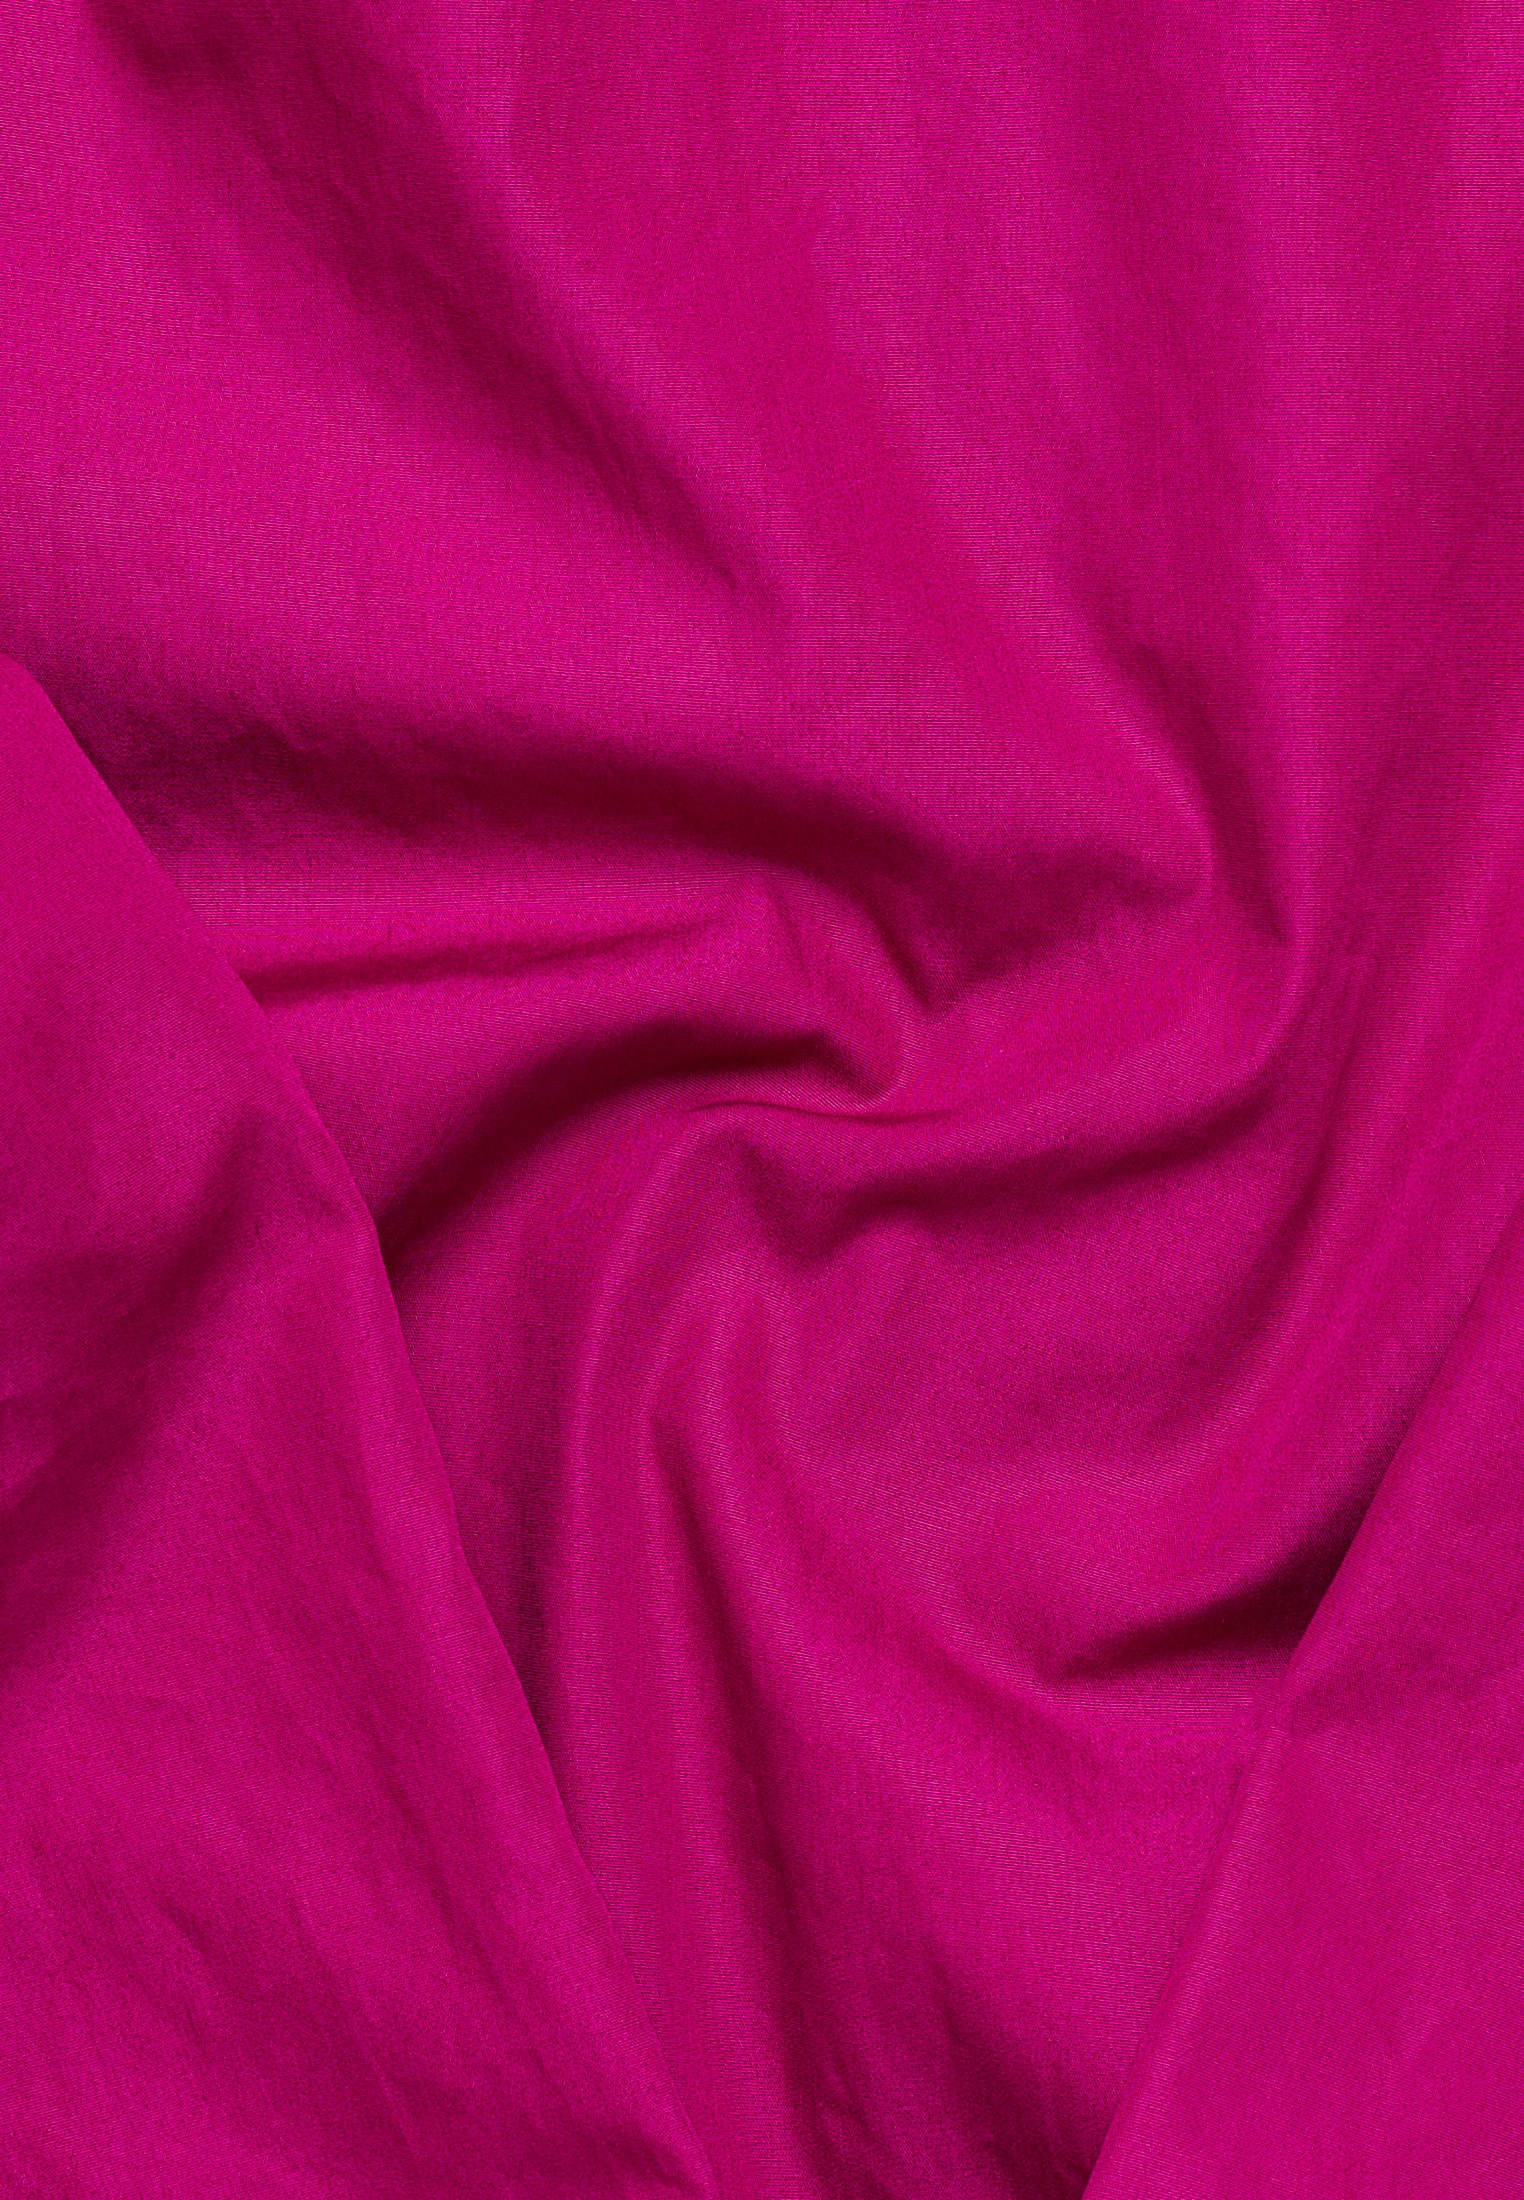 Hemdbluse in pink unifarben | pink | | 2BL04177-15-21-34-1/1 Langarm | 34